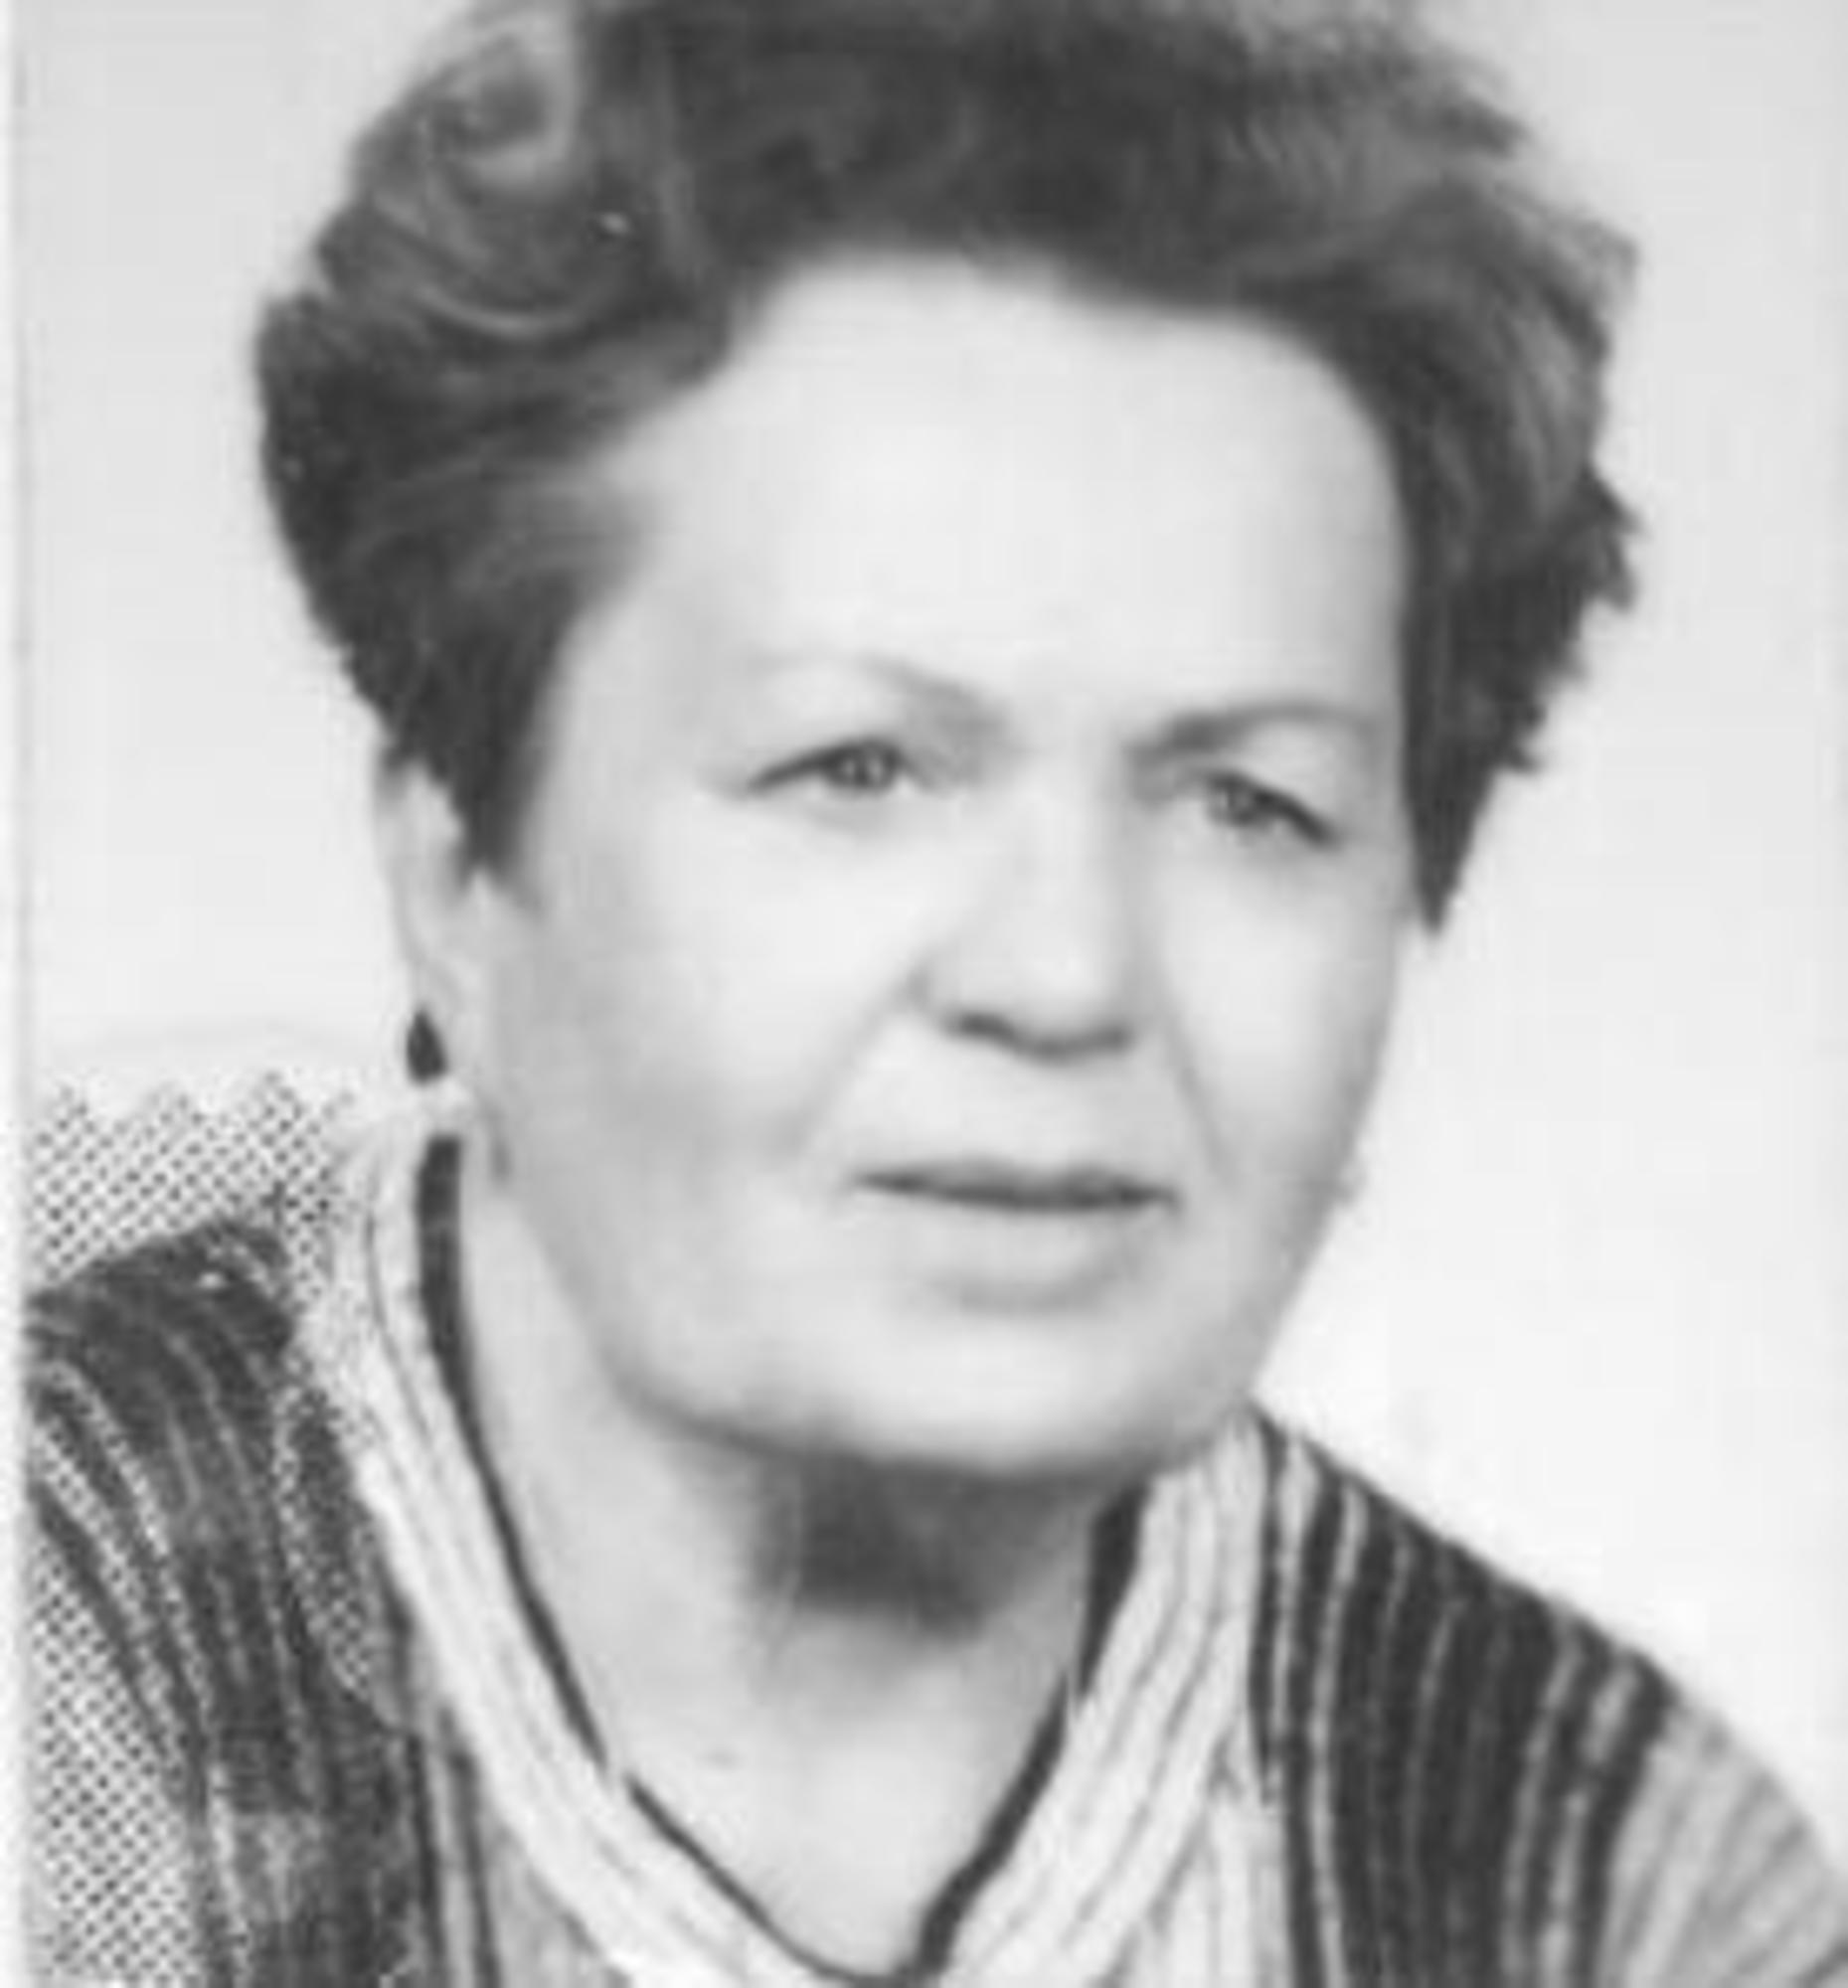 Paní Kochánková.jpg (historic)